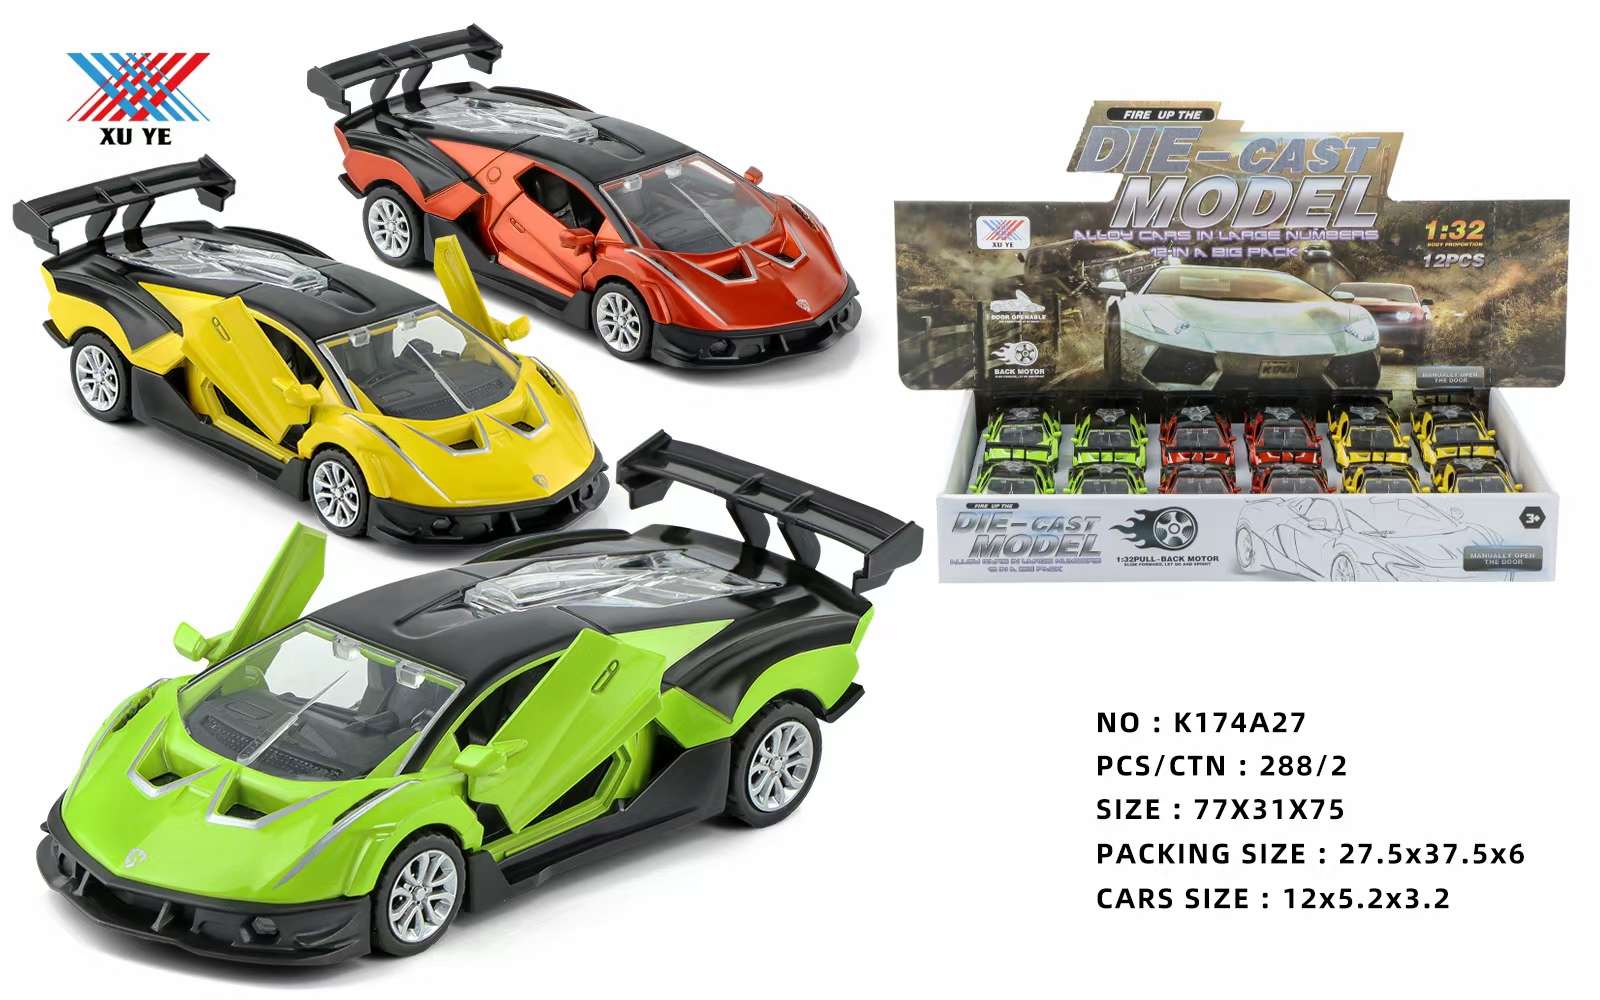 合金车玩具儿童玩具车 车模汽车模型 玩具车模型玩具 童年乐趣车模收藏图